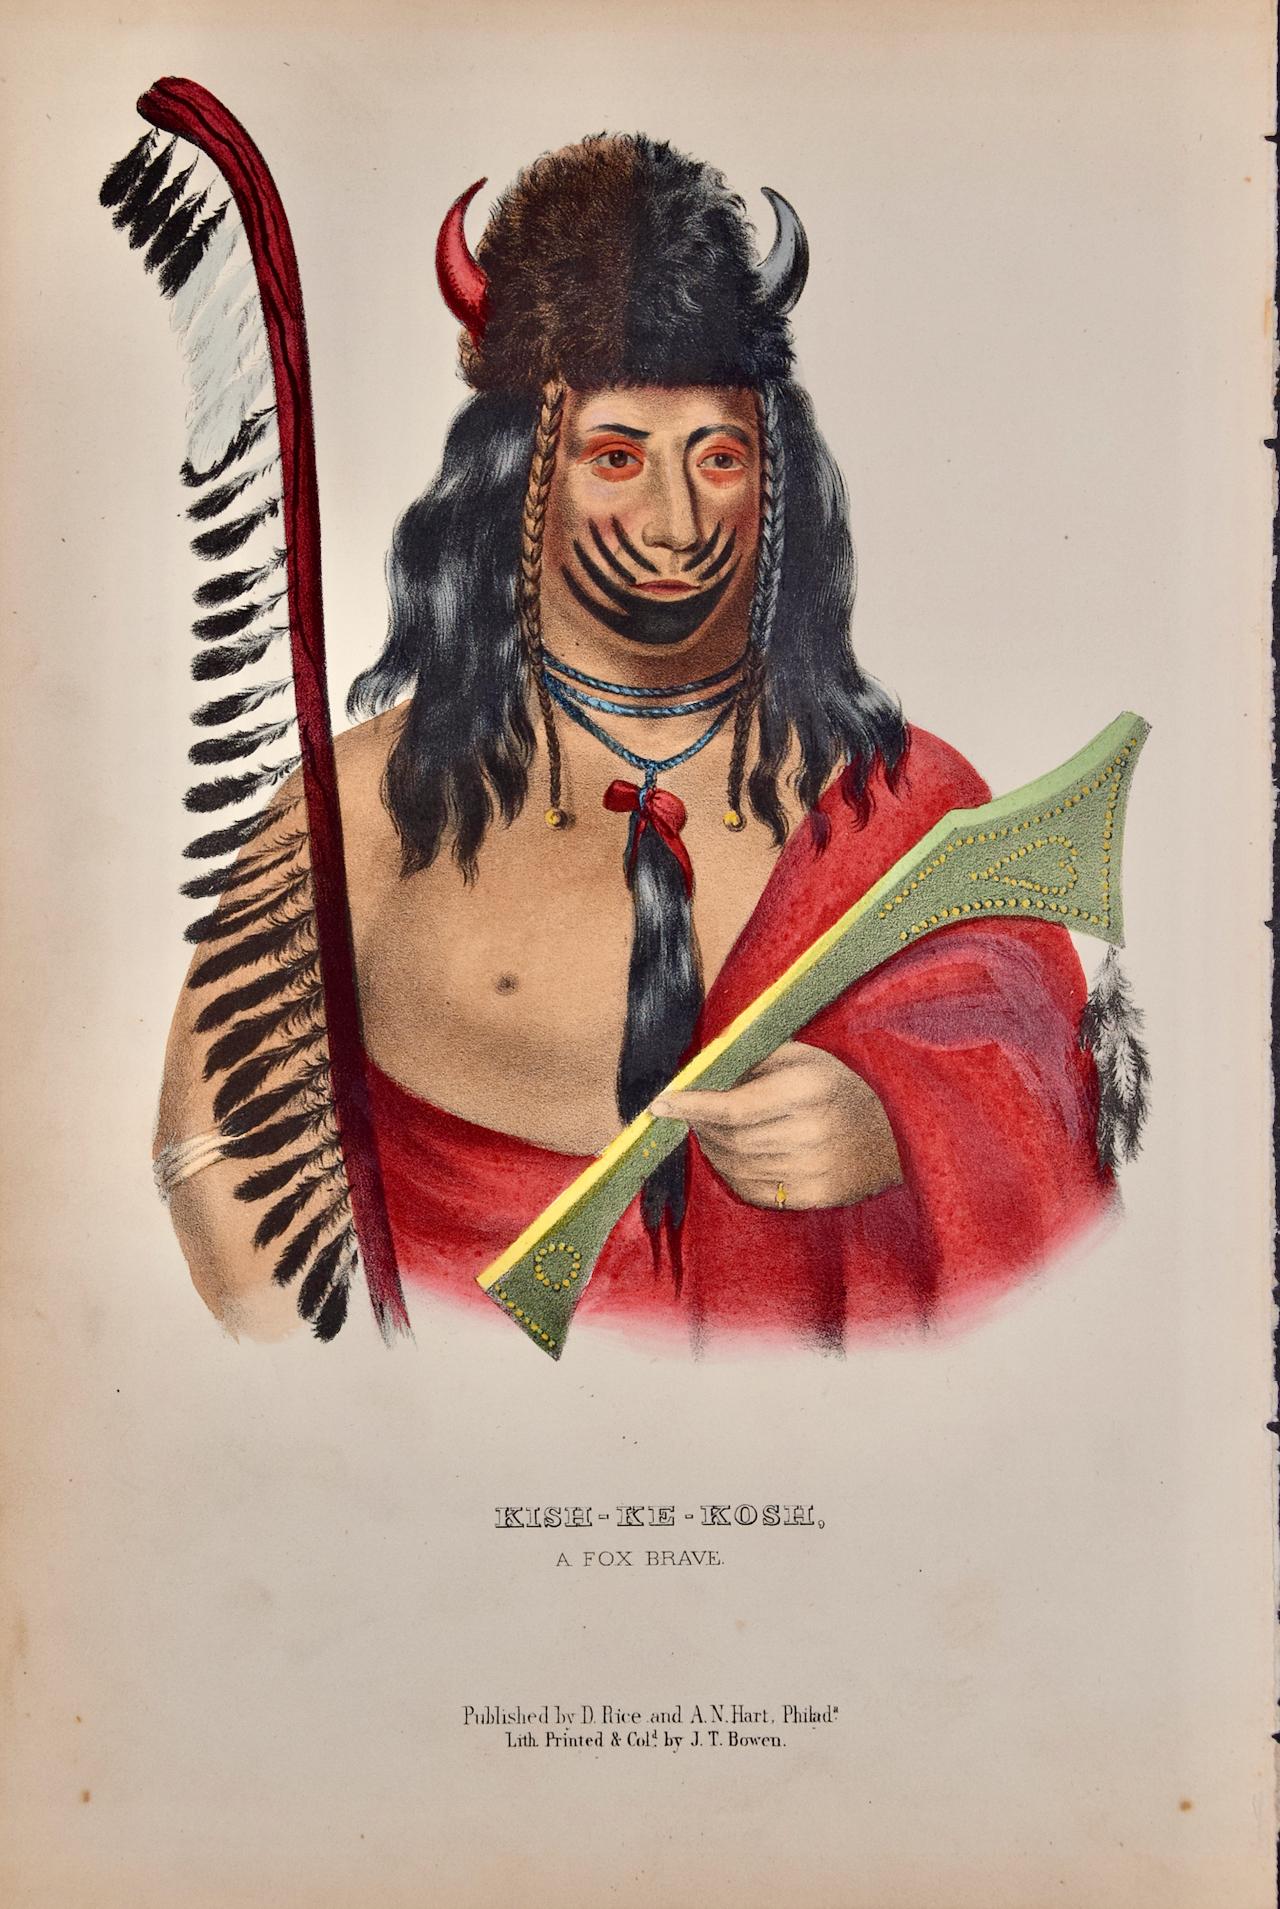 Kish-Ke-Kosh, Fox Brave : Lithographie originale colorée à la main de McKenney & Hall